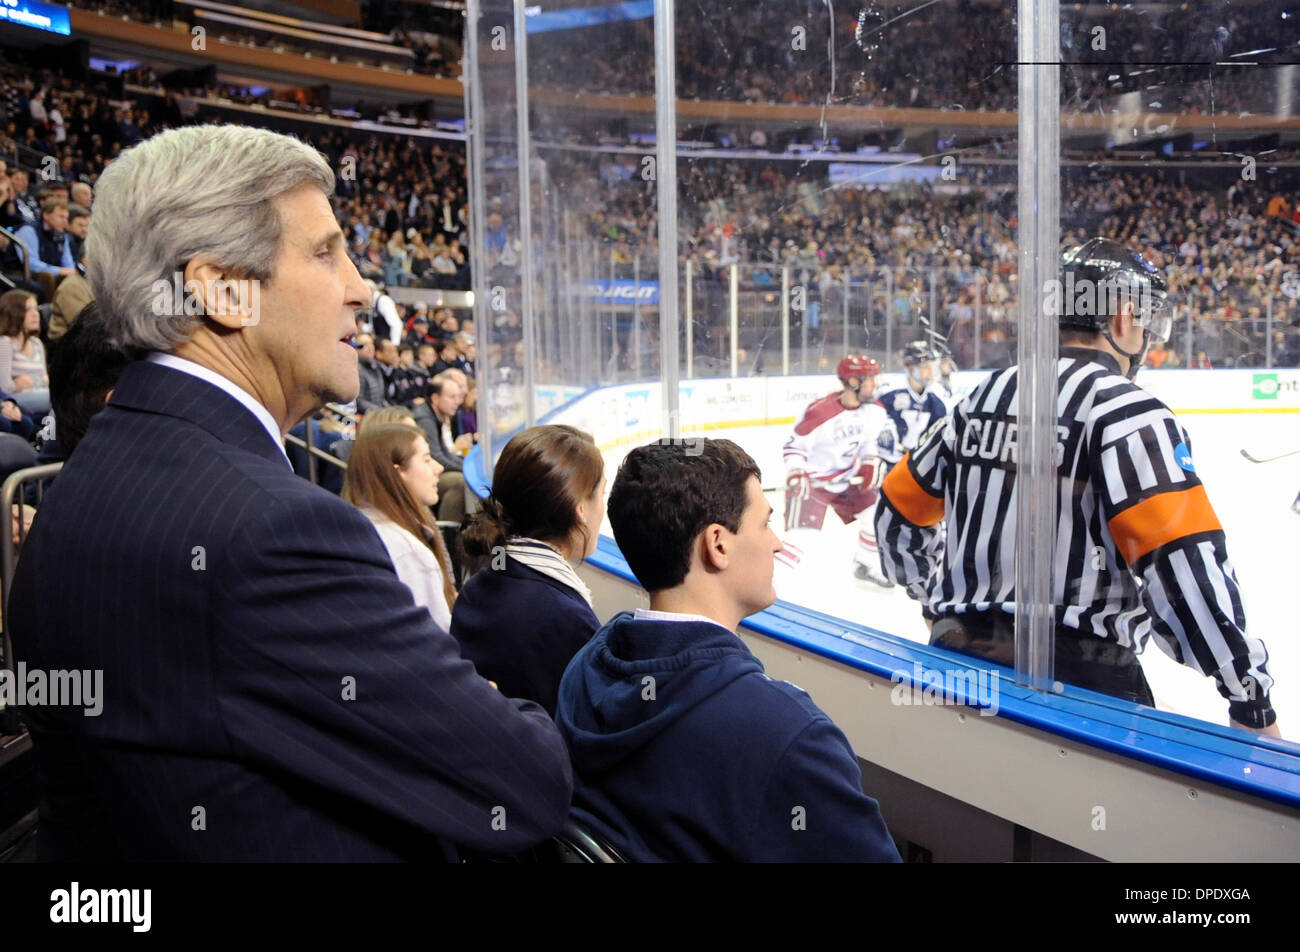 Il Segretario di Stato americano John Kerry orologi Yale vs Harvard University uomini gamma hockey su ghiaccio al Madison Square Garden Gennaio 11, 2014 a New York, NY. Foto Stock